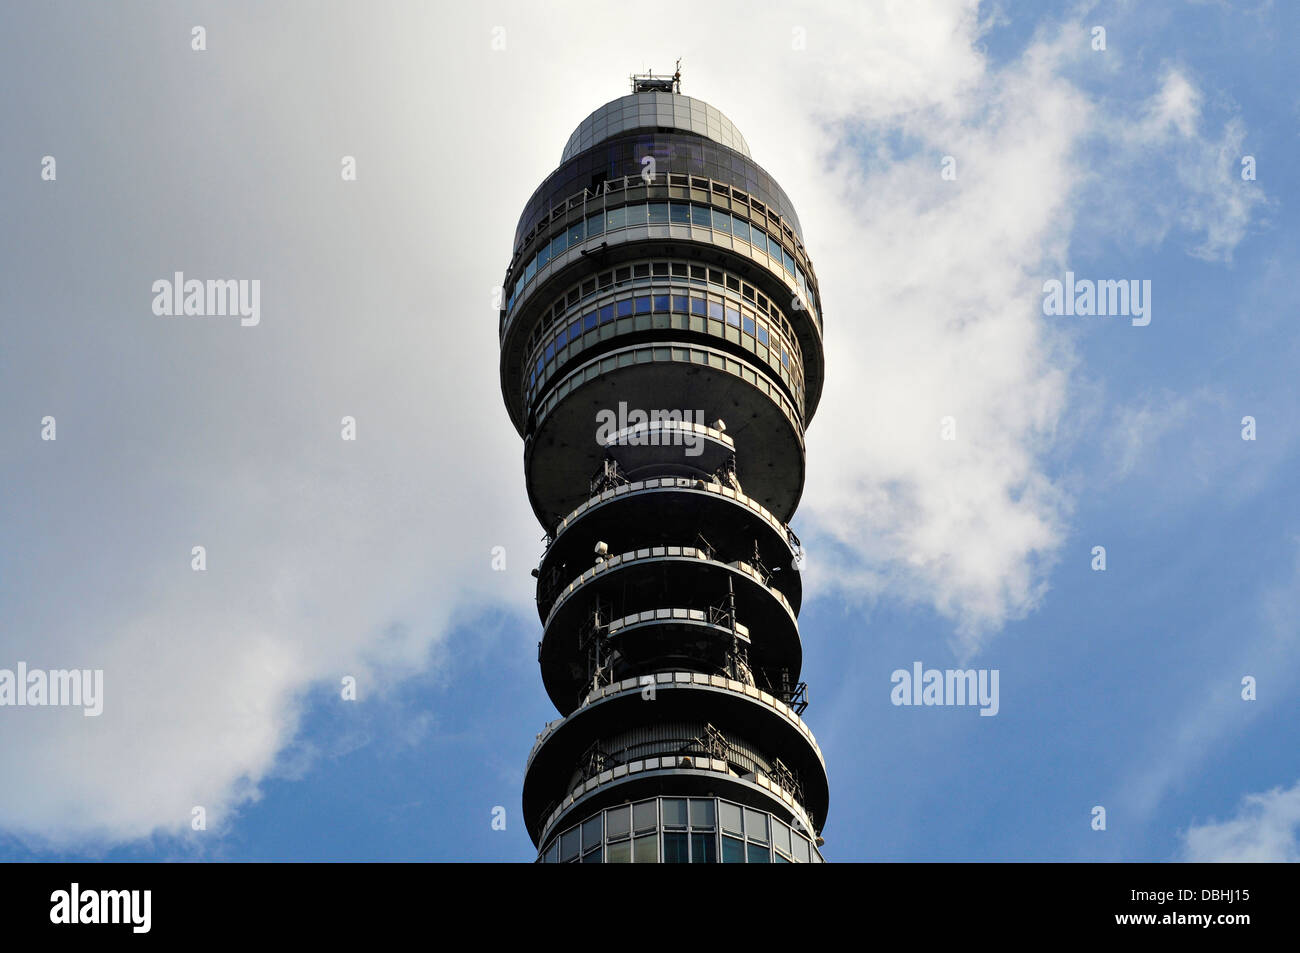 Une vue étroite de la BT Tower, London, UK Banque D'Images